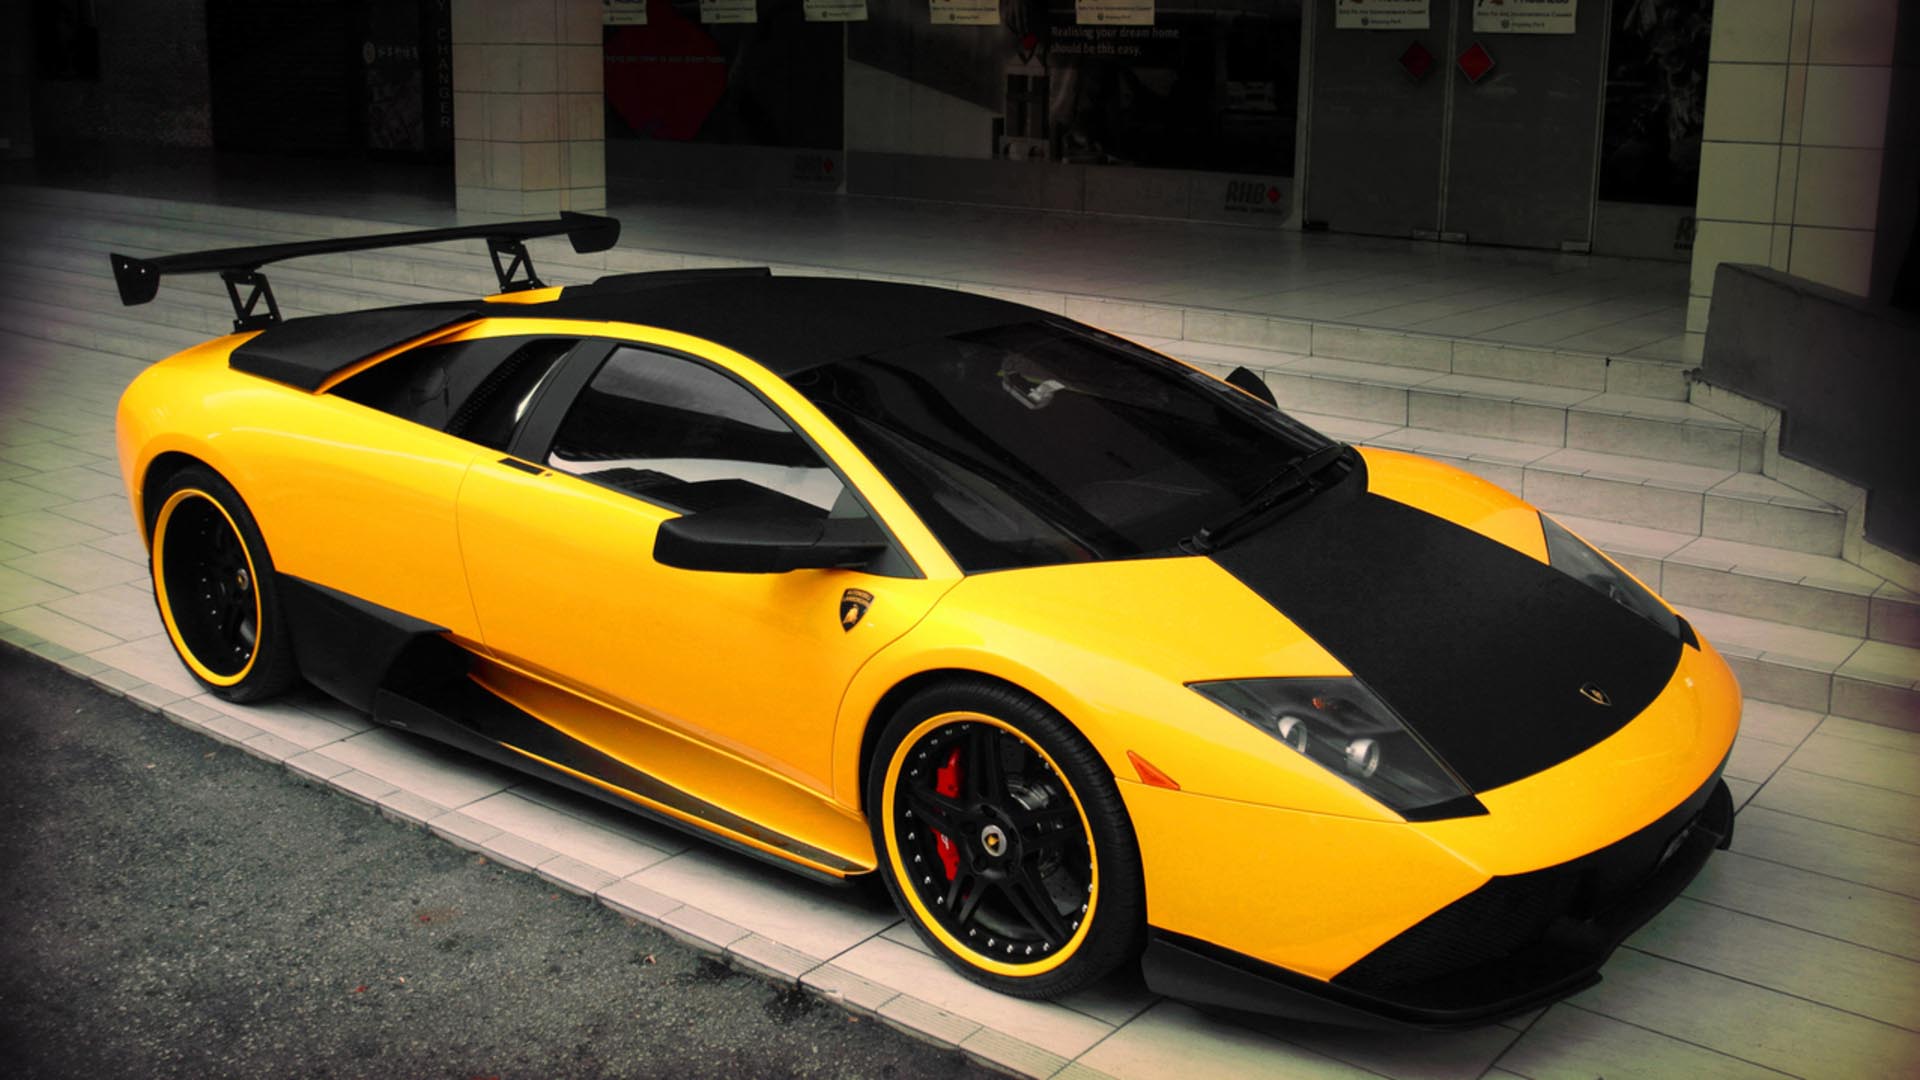 [49+] Best Lamborghini Wallpapers on WallpaperSafari